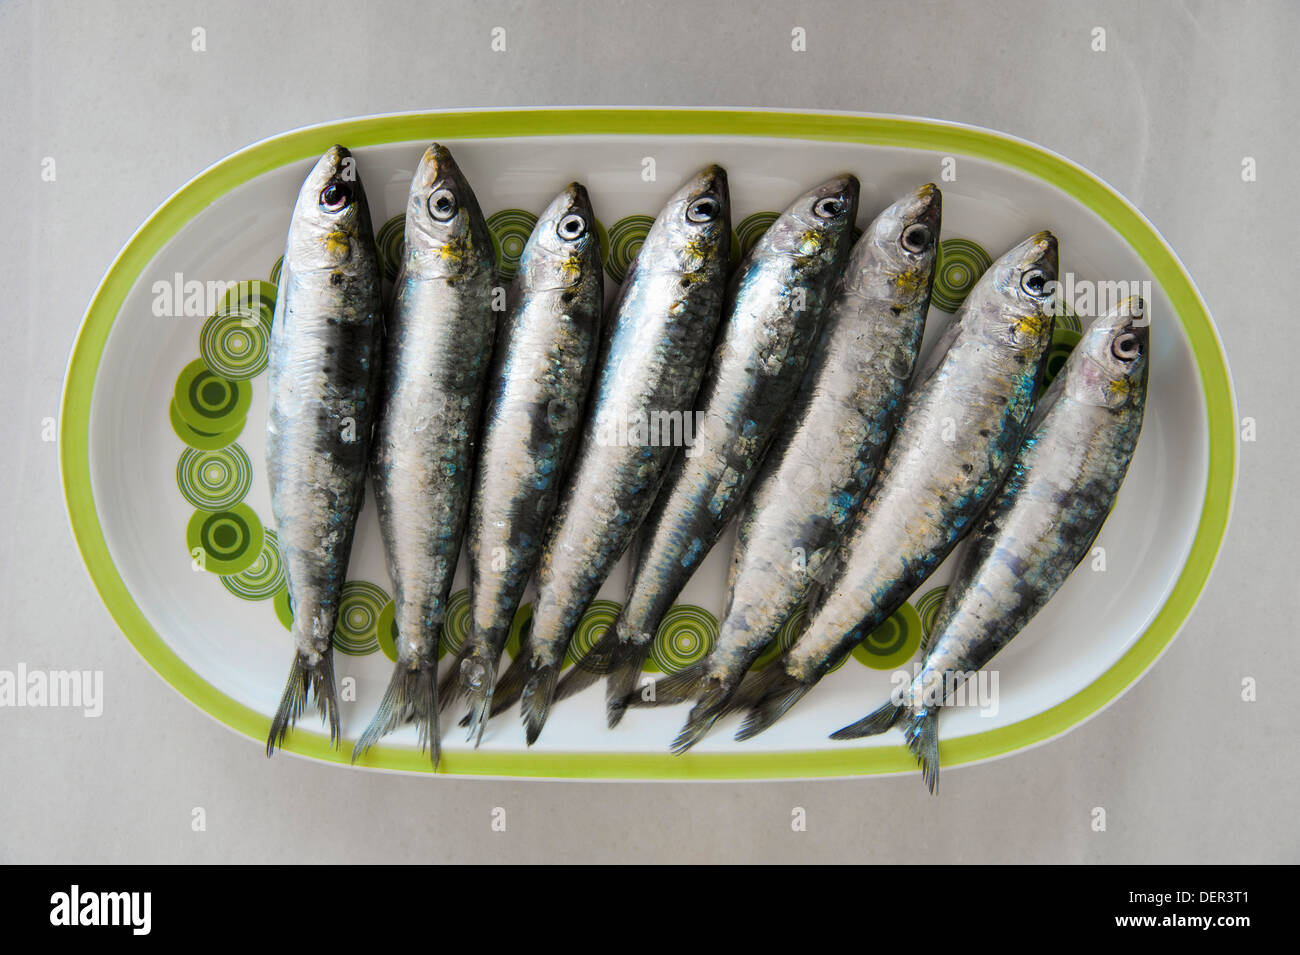 eight raw sardines (Sardina pilchardus) on plate Stock Photo